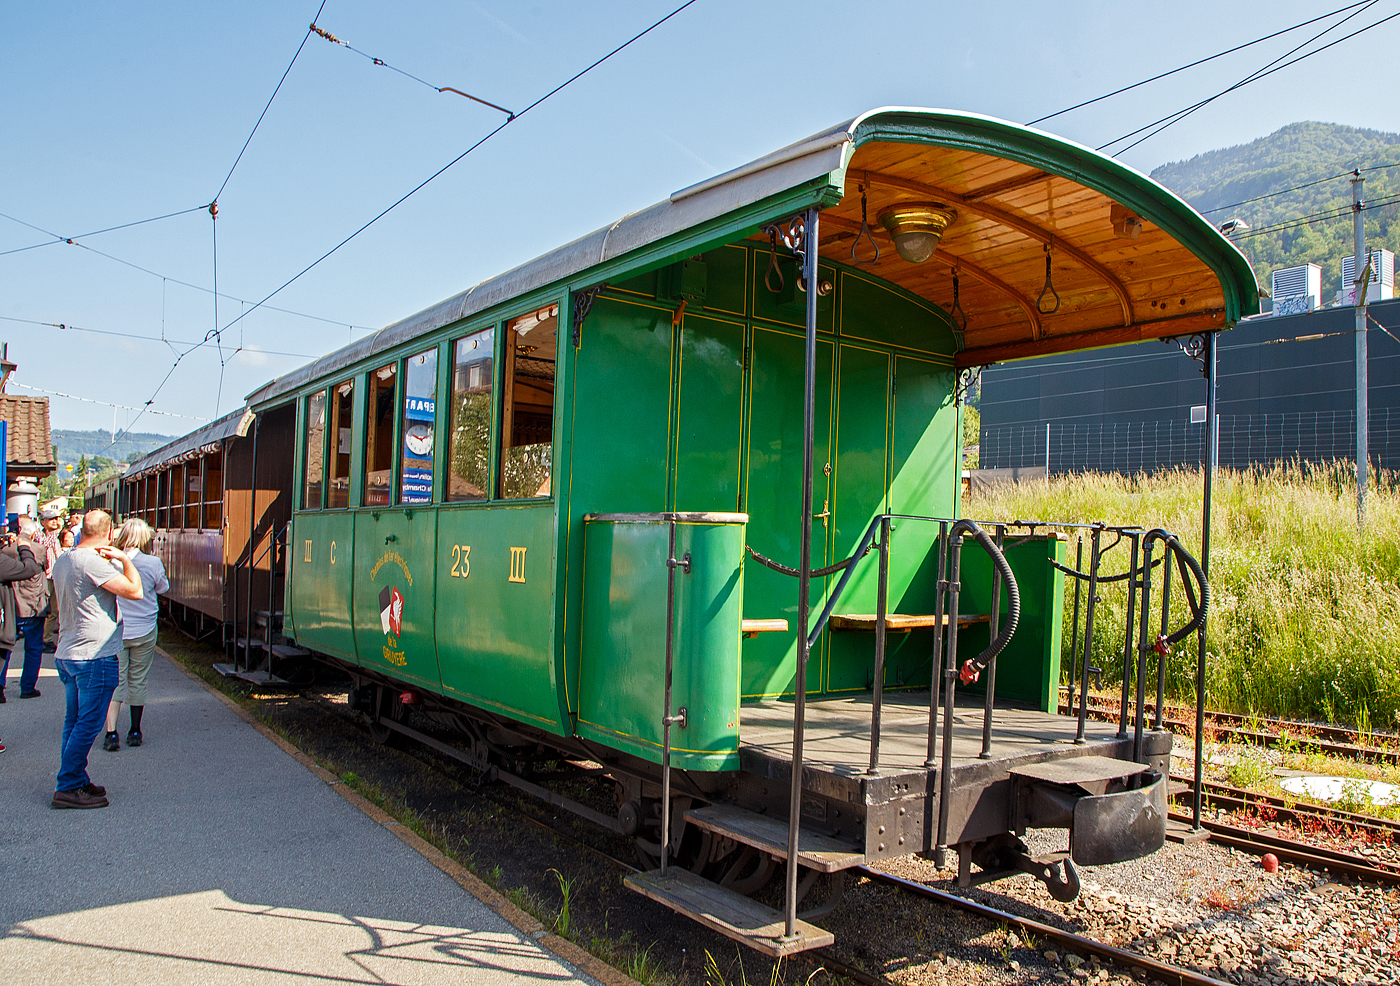 Der zweiachsige 3. Klasse Personenwagen mit offenen Plattformen (Plattformwagen) ex CEG C 23 (Chemins de fer Electriques de la Gruyère, ab 1942 GFM - Chemins de fer fribourgeois Gruyère–Fribourg–Morat) der Museumsbahn Blonay-Chamby am 27.05.2023 im Zugverband im Bahnhof Blonay.

Der Wagen wurde 1903 von der SWS (Schweizerische Wagons- und Aufzügefabrik AG, Schlieren) für die Chemins de fer électriques Veveysans (CEG) gebaut und als CEG C² 23 geliefert. Im Jahr 1967 ging der Wagen an die Museumsbahn Blonay-Chamby.

Die Chemins de fer électriques de la Gruyère schloss sich 1942 mit den beiden Normalspurbahnen FMA und BR zur GMF (Chemins de fer fribourgeois Gruyère–Fribourg–Morat) zusammen. Seit 2000 nun TPF (Transports publics fribourgeois SA / Freiburgische Verkehrsbetriebe AG).

TECHNISCHE DATEN:
Baujahr: 1903
Hersteller: SWS Schlieren (Schweizerische Wagons- und Aufzügefabrik AG)
Spurweite: 1.000 mm (Meterspur)
Achsanzahl: 2
Länge über Puffer: 8.900 mm
Länge Wagenkasten: 7.900 mm (mit Plattformen)
Achsabstand: 4.300 mm
Eigengewicht: 7,3 t
Sitzplätze: 23 in der 3. Klasse